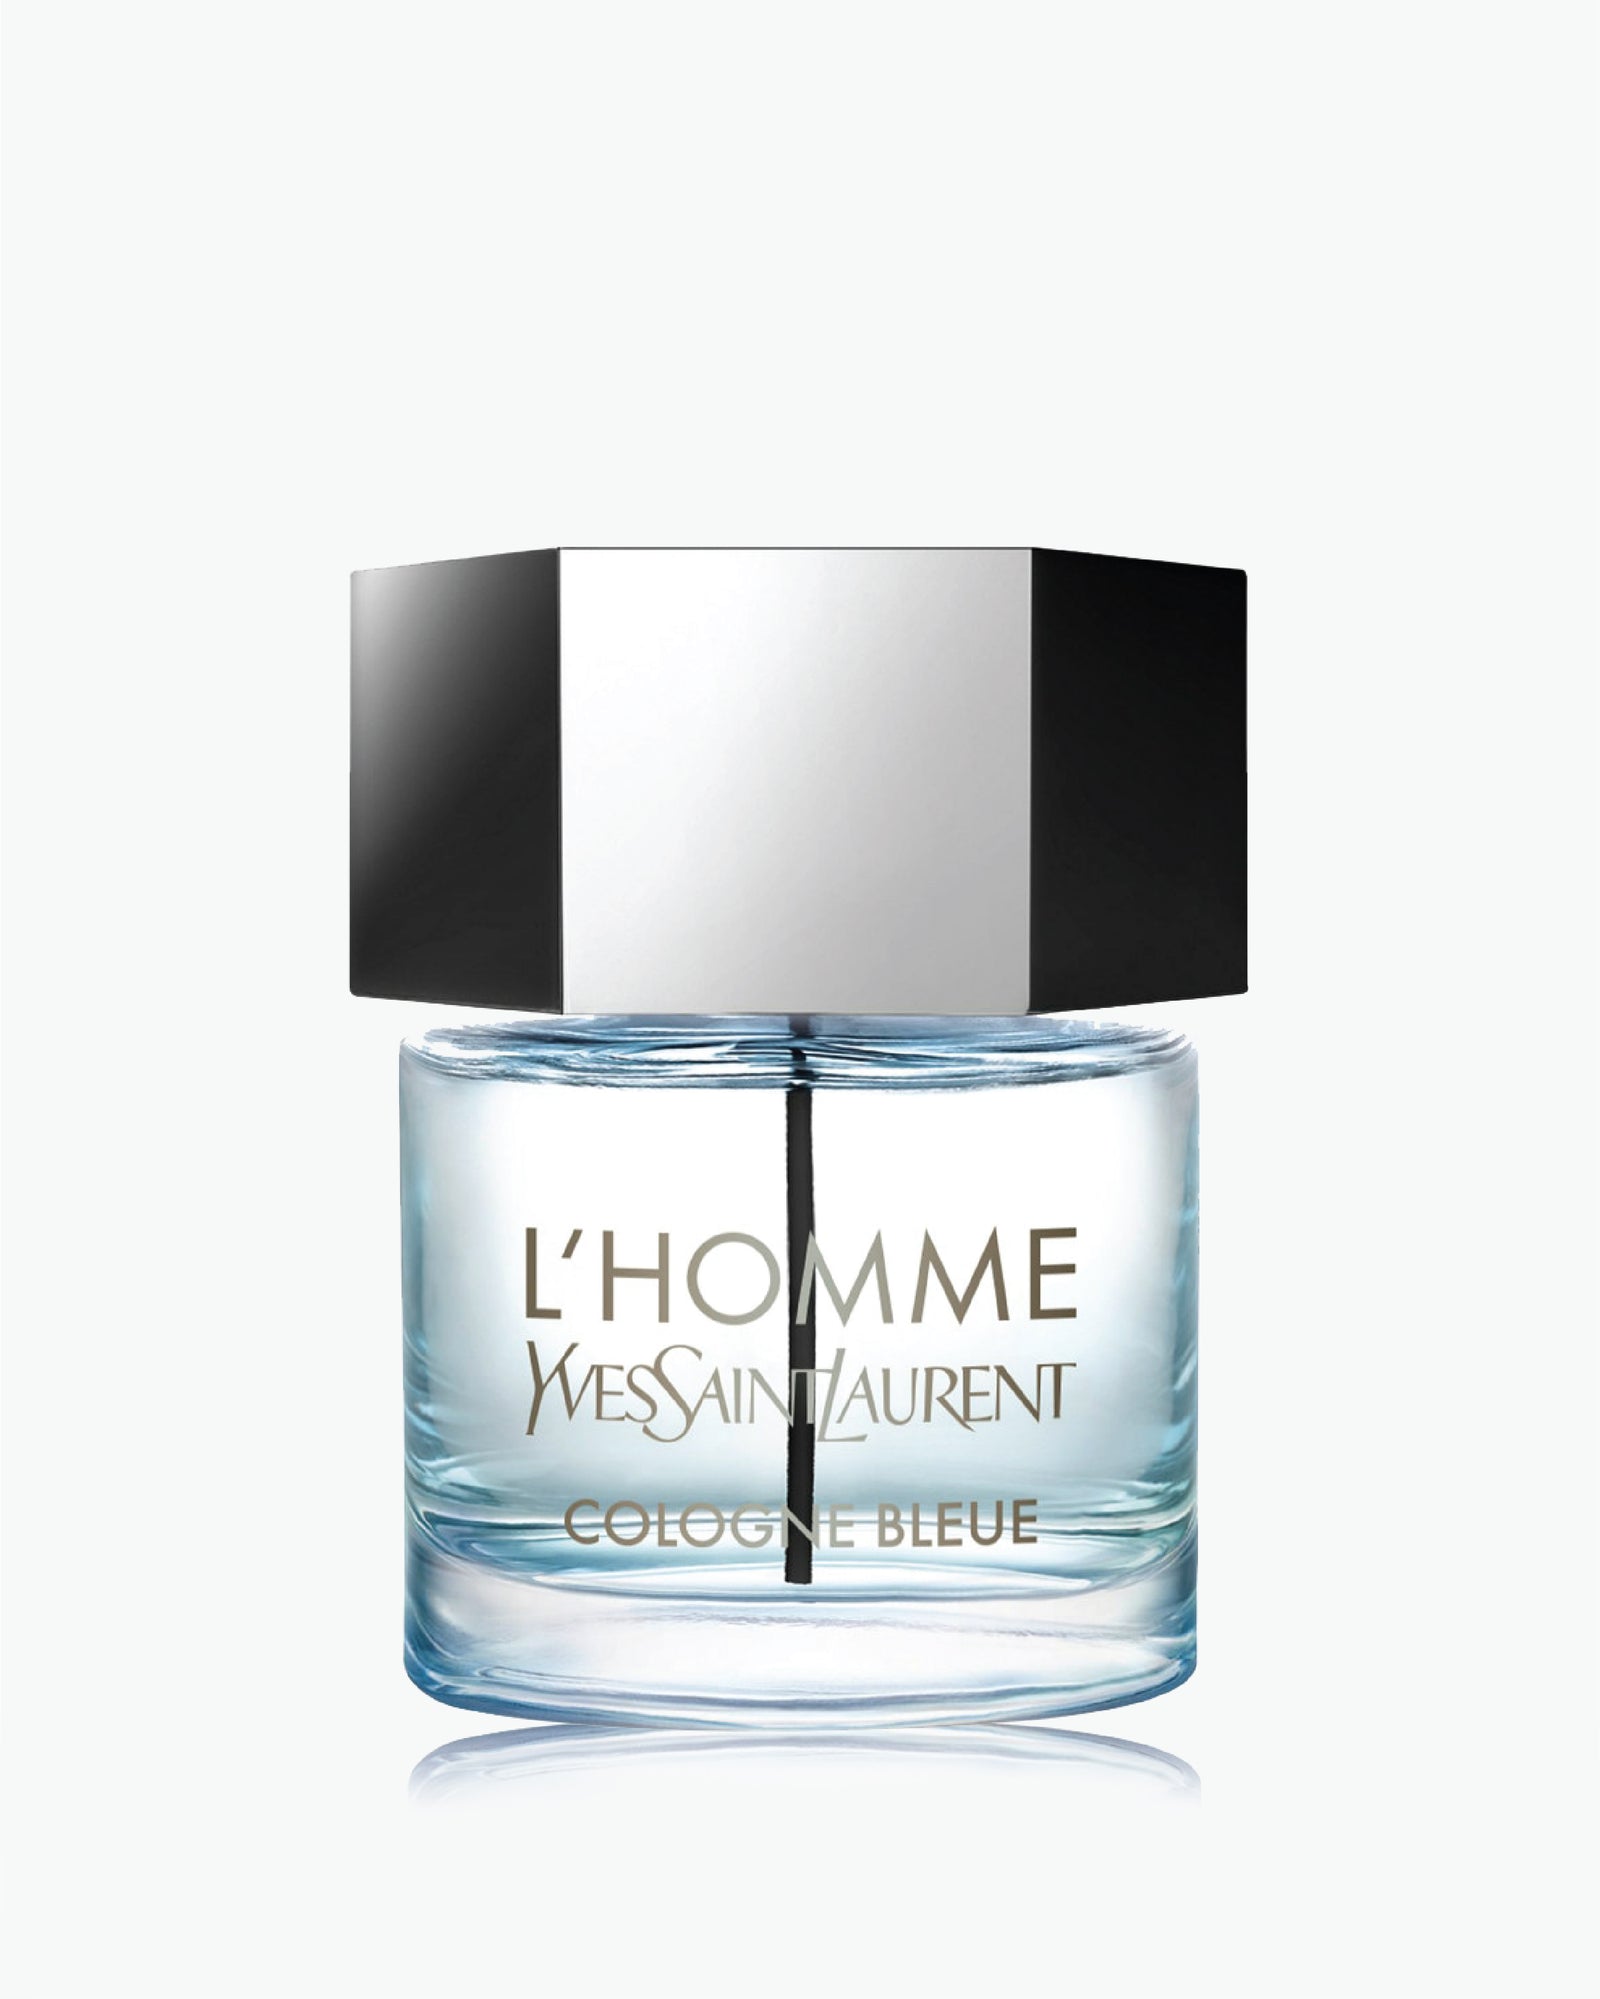 Yves Saint Laurent Touche Eclat Pour Homme - Reviews